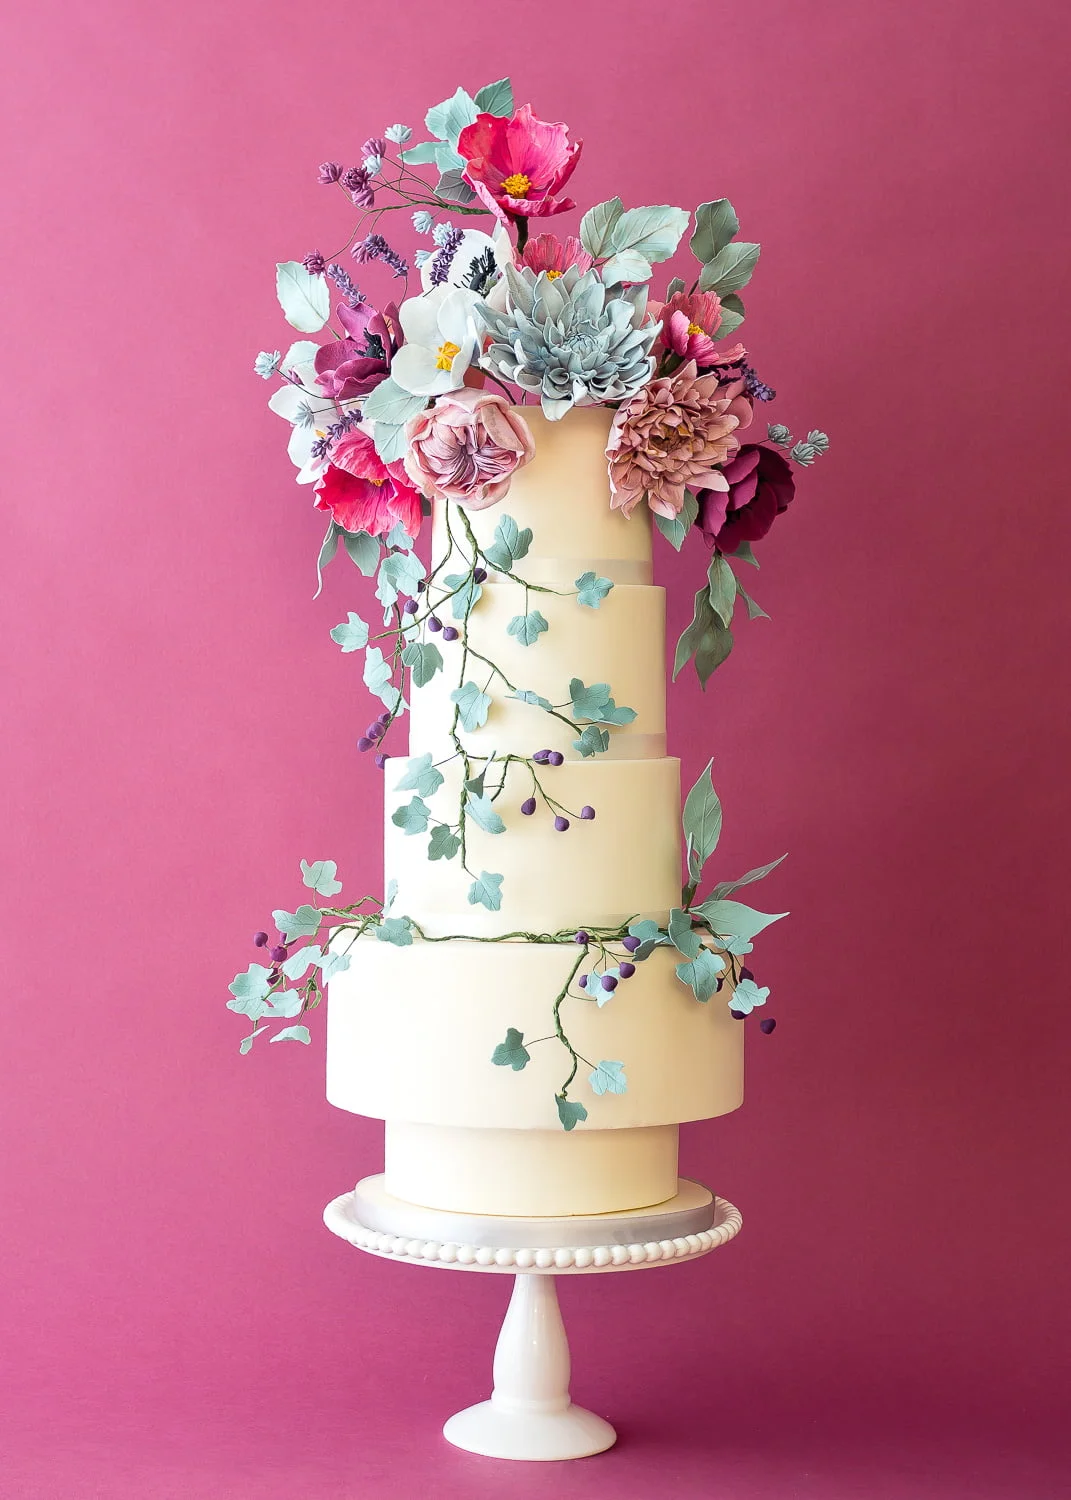 Wedding Cake of 7 Tiers - Cake Picks